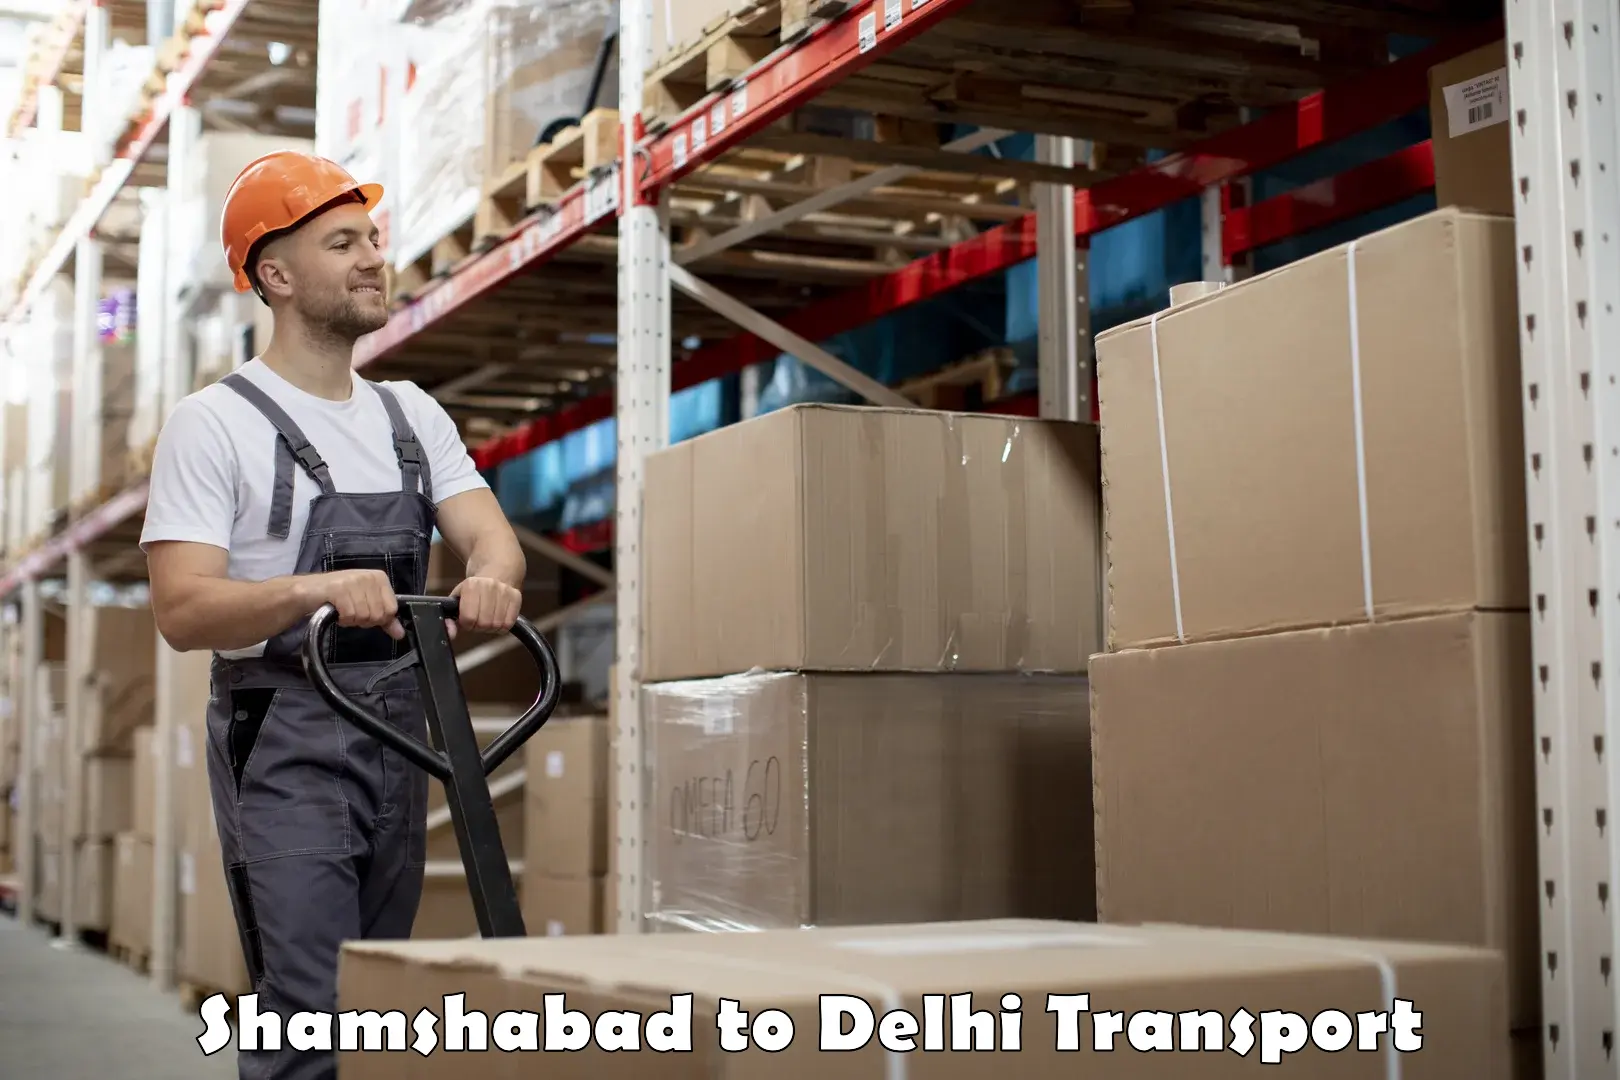 Furniture transport service Shamshabad to Lodhi Road